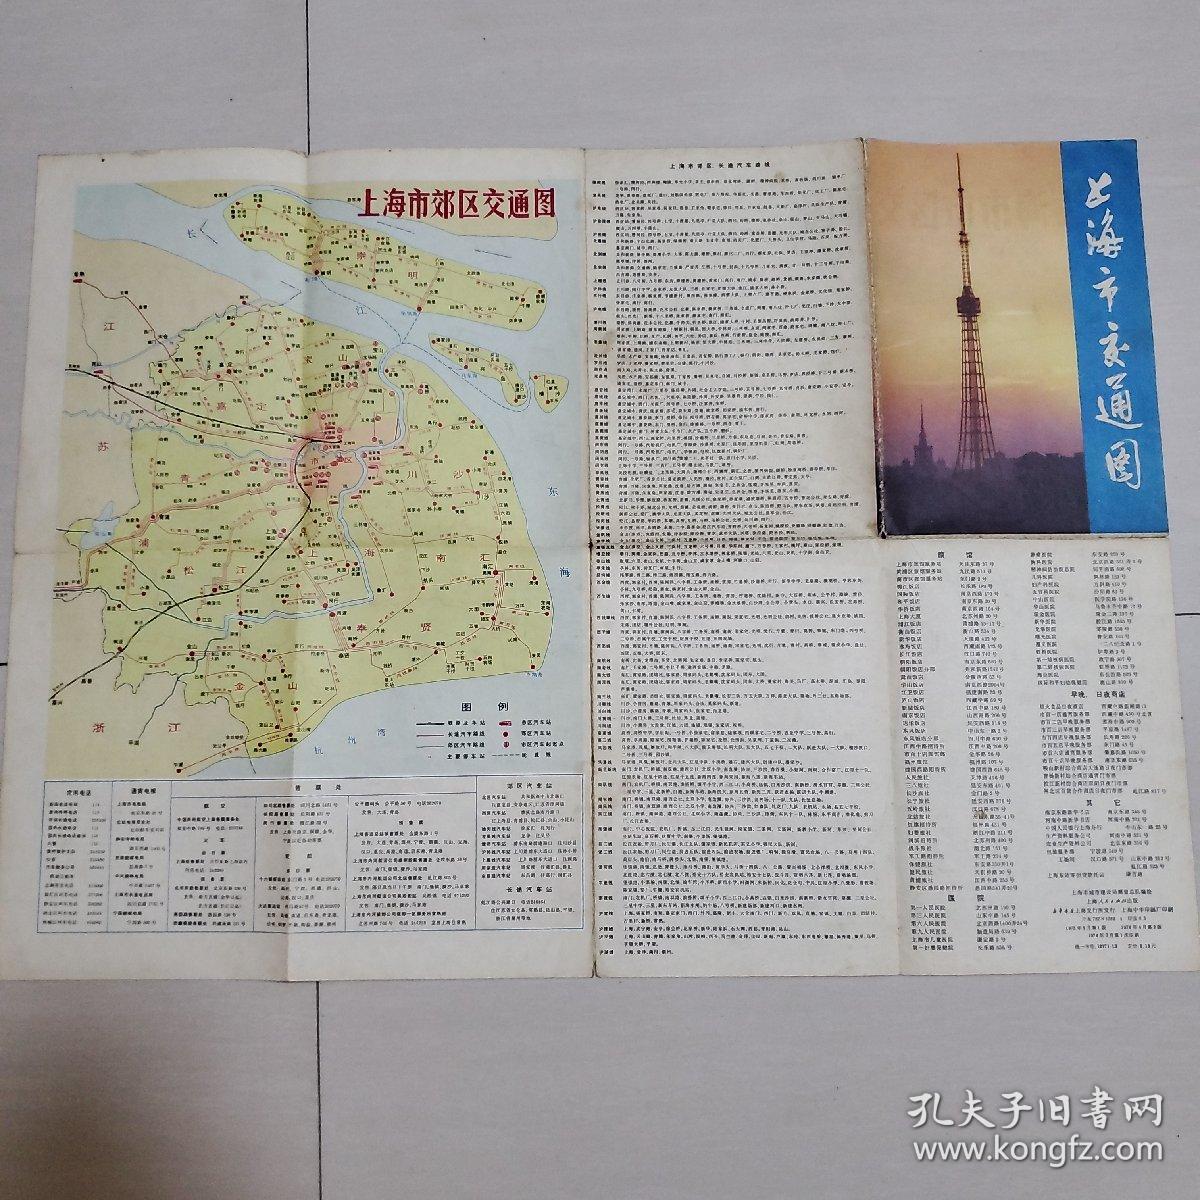 上海市交通图